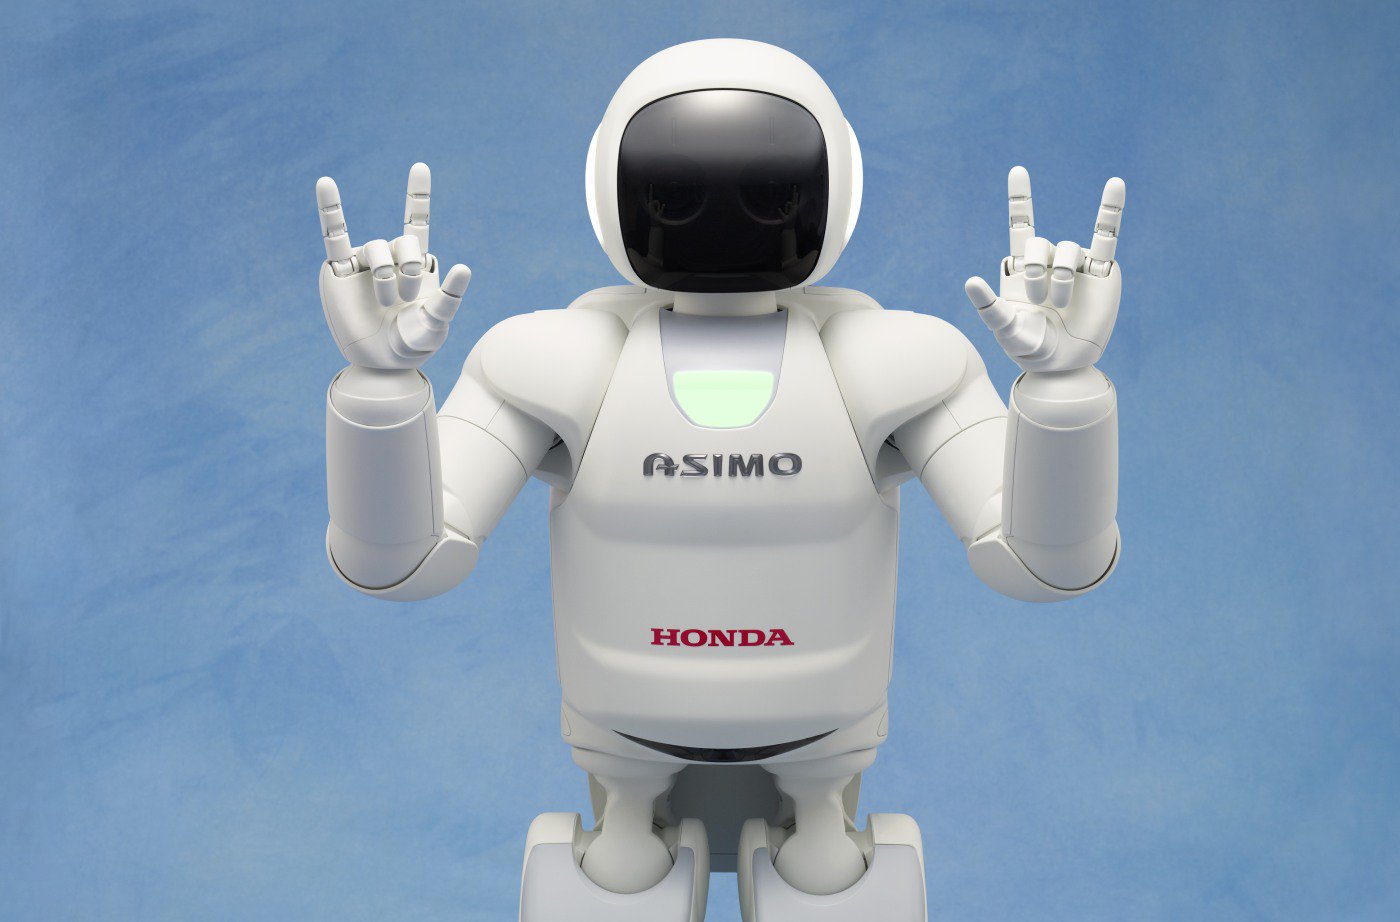 Honda stannar utvecklingen av tvåfoting robotar som Asimo